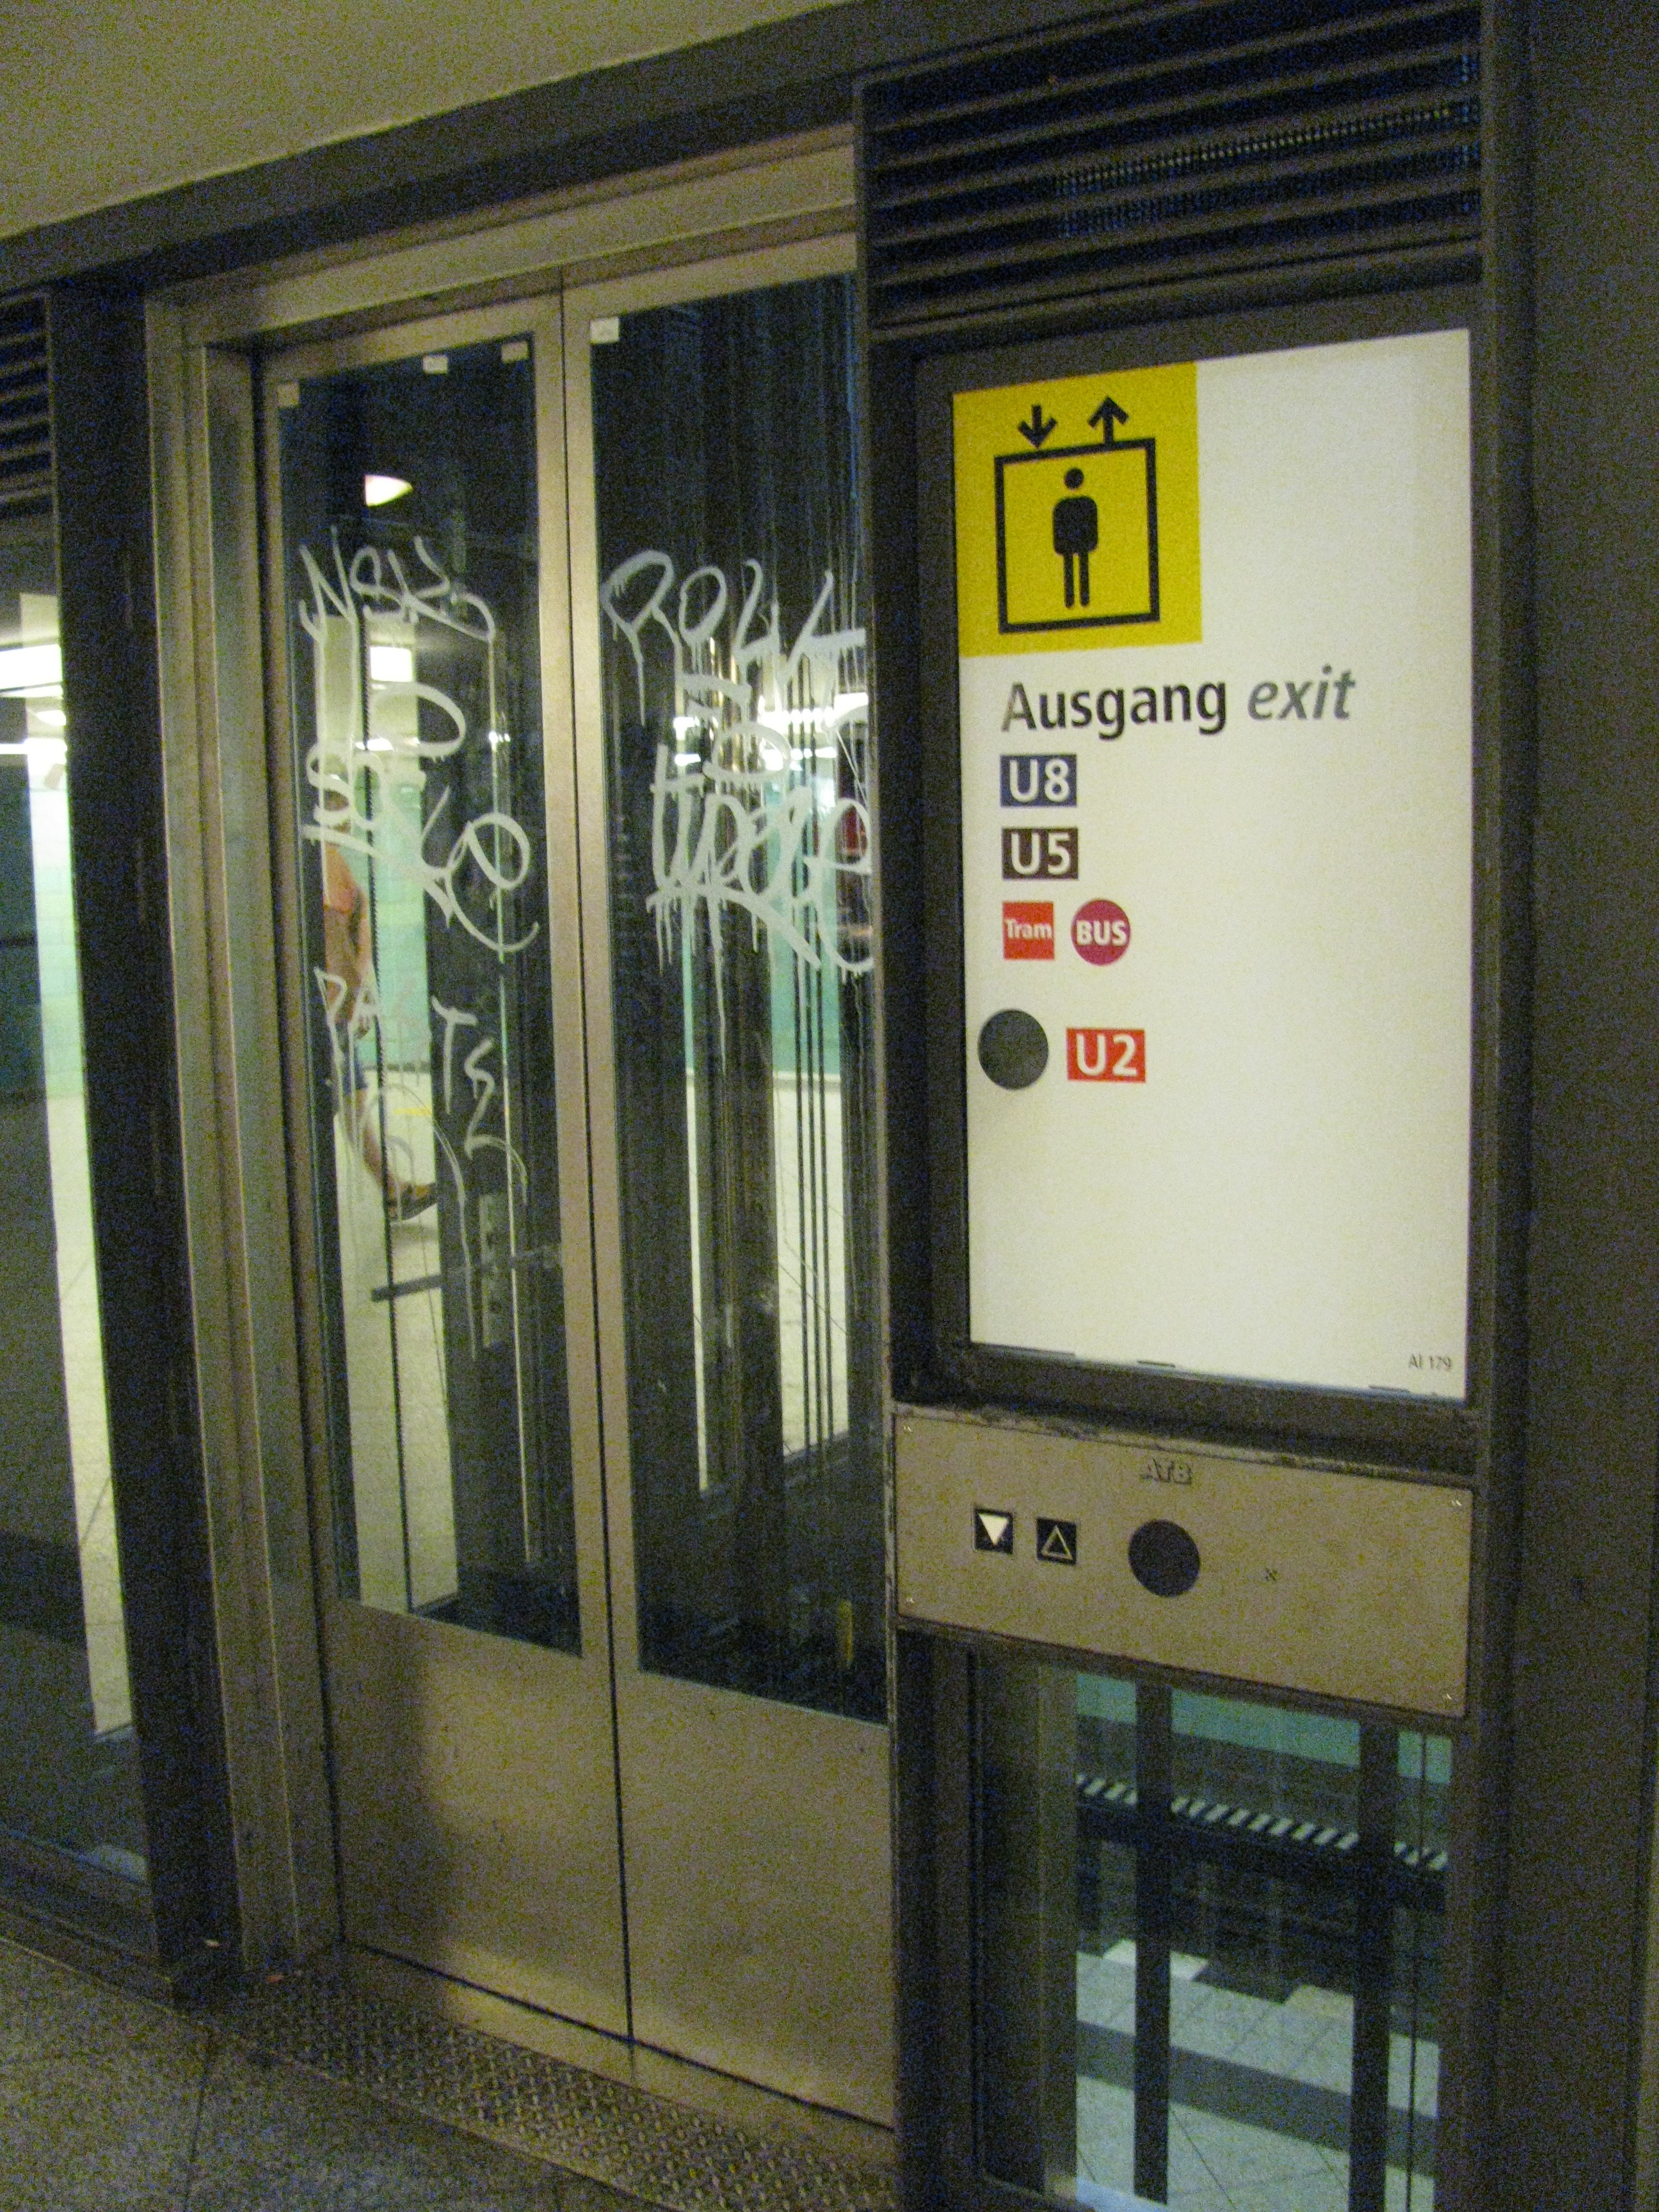 Beschmierter Aufzug, U8.